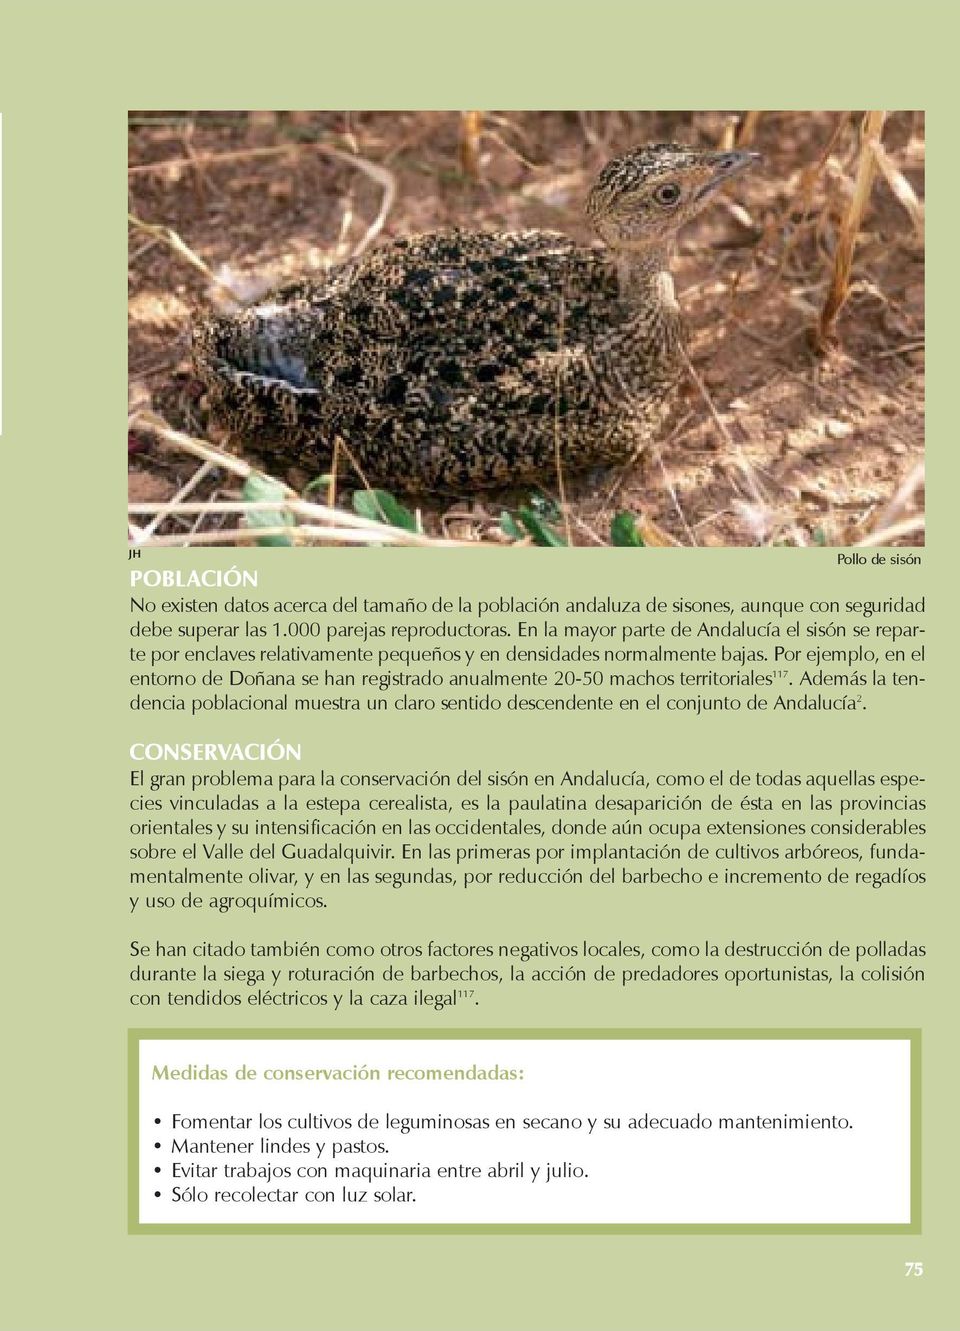 Por ejemplo, en el entorno de Doñana se han registrado anualmente 20-50 machos territoriales 117. Además la tendencia poblacional muestra un claro sentido descendente en el conjunto de Andalucía 2.